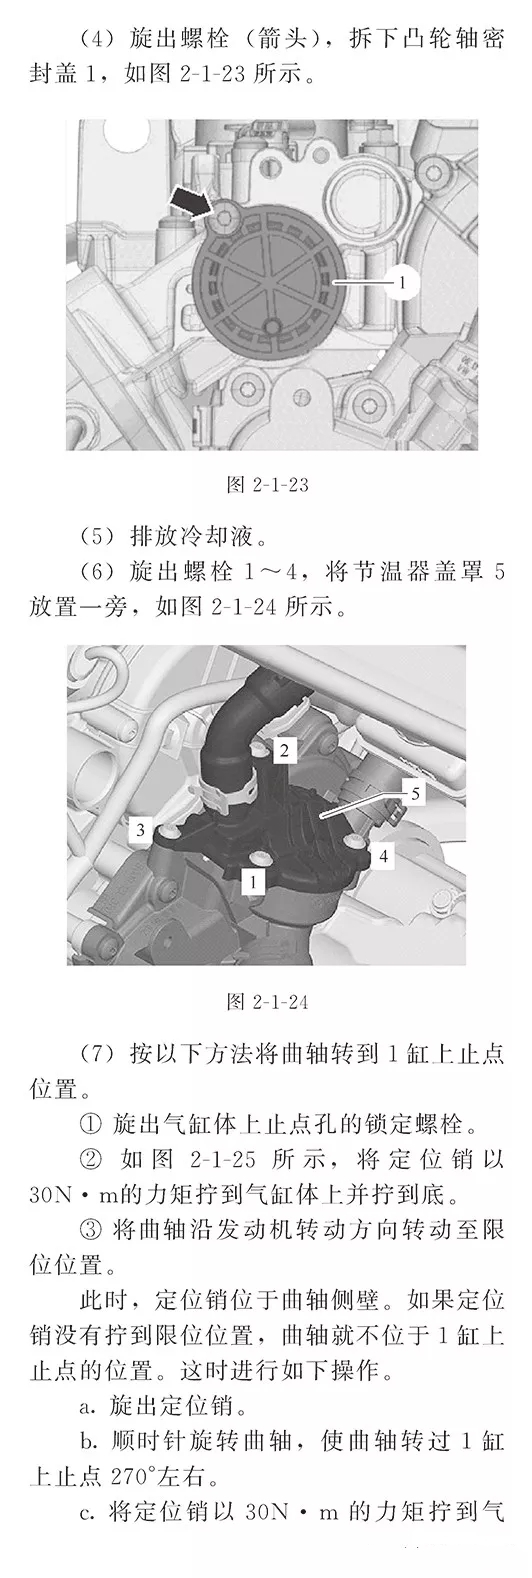 【捷达/桑塔纳/高尔夫/POLO/速腾/朗逸正时校对（1.4L/1.6L）】图2